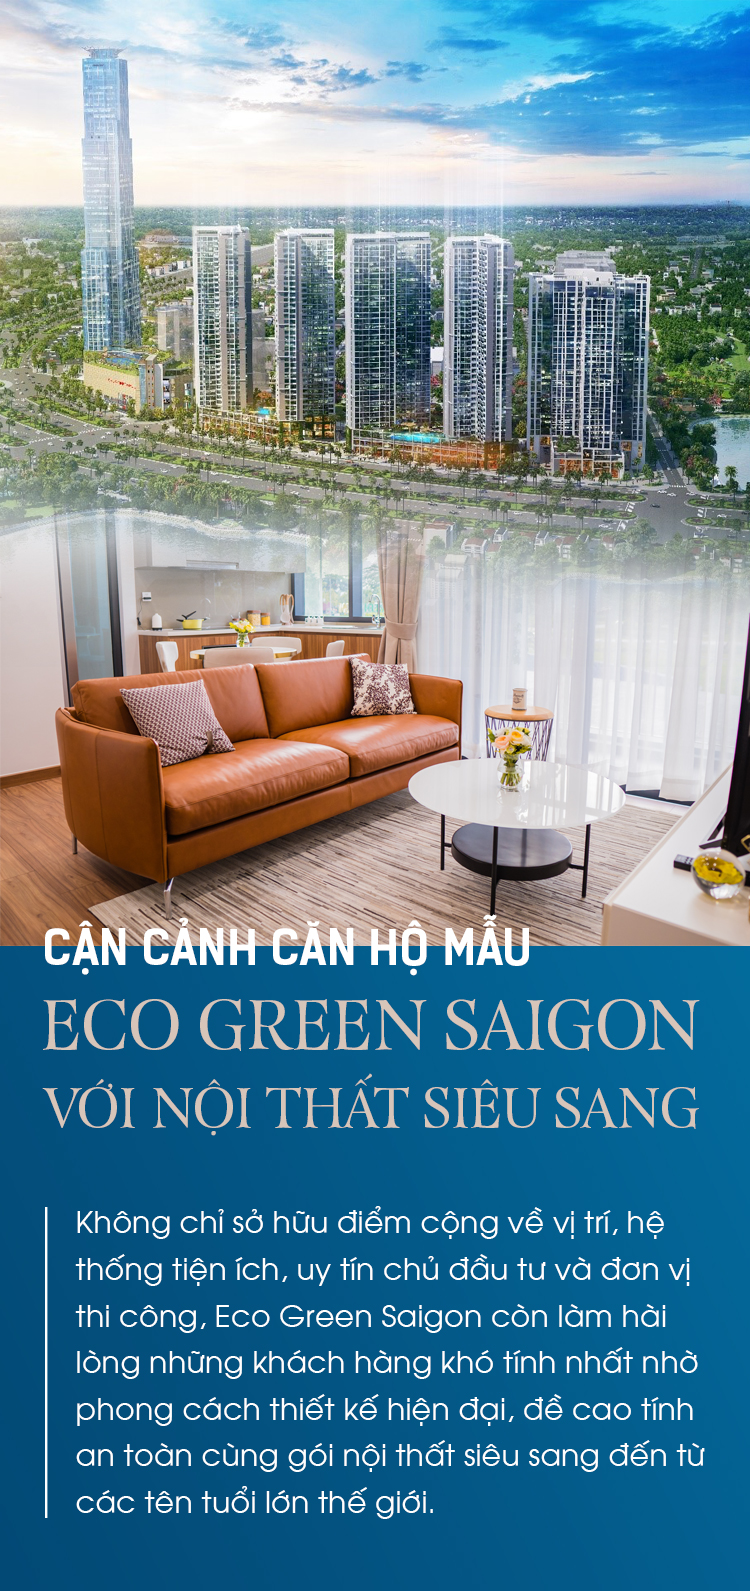 Eco Green Saigon: Eco Green Saigon không chỉ là nơi để sinh sống, mà còn là một không gian thiên nhiên trong lành, tươi mát giữa lòng thành phố. Hãy mở ảnh để khám phá những ngôi nhà xanh nổi bật, mang lại cảm giác thoải mái cho cư dân.